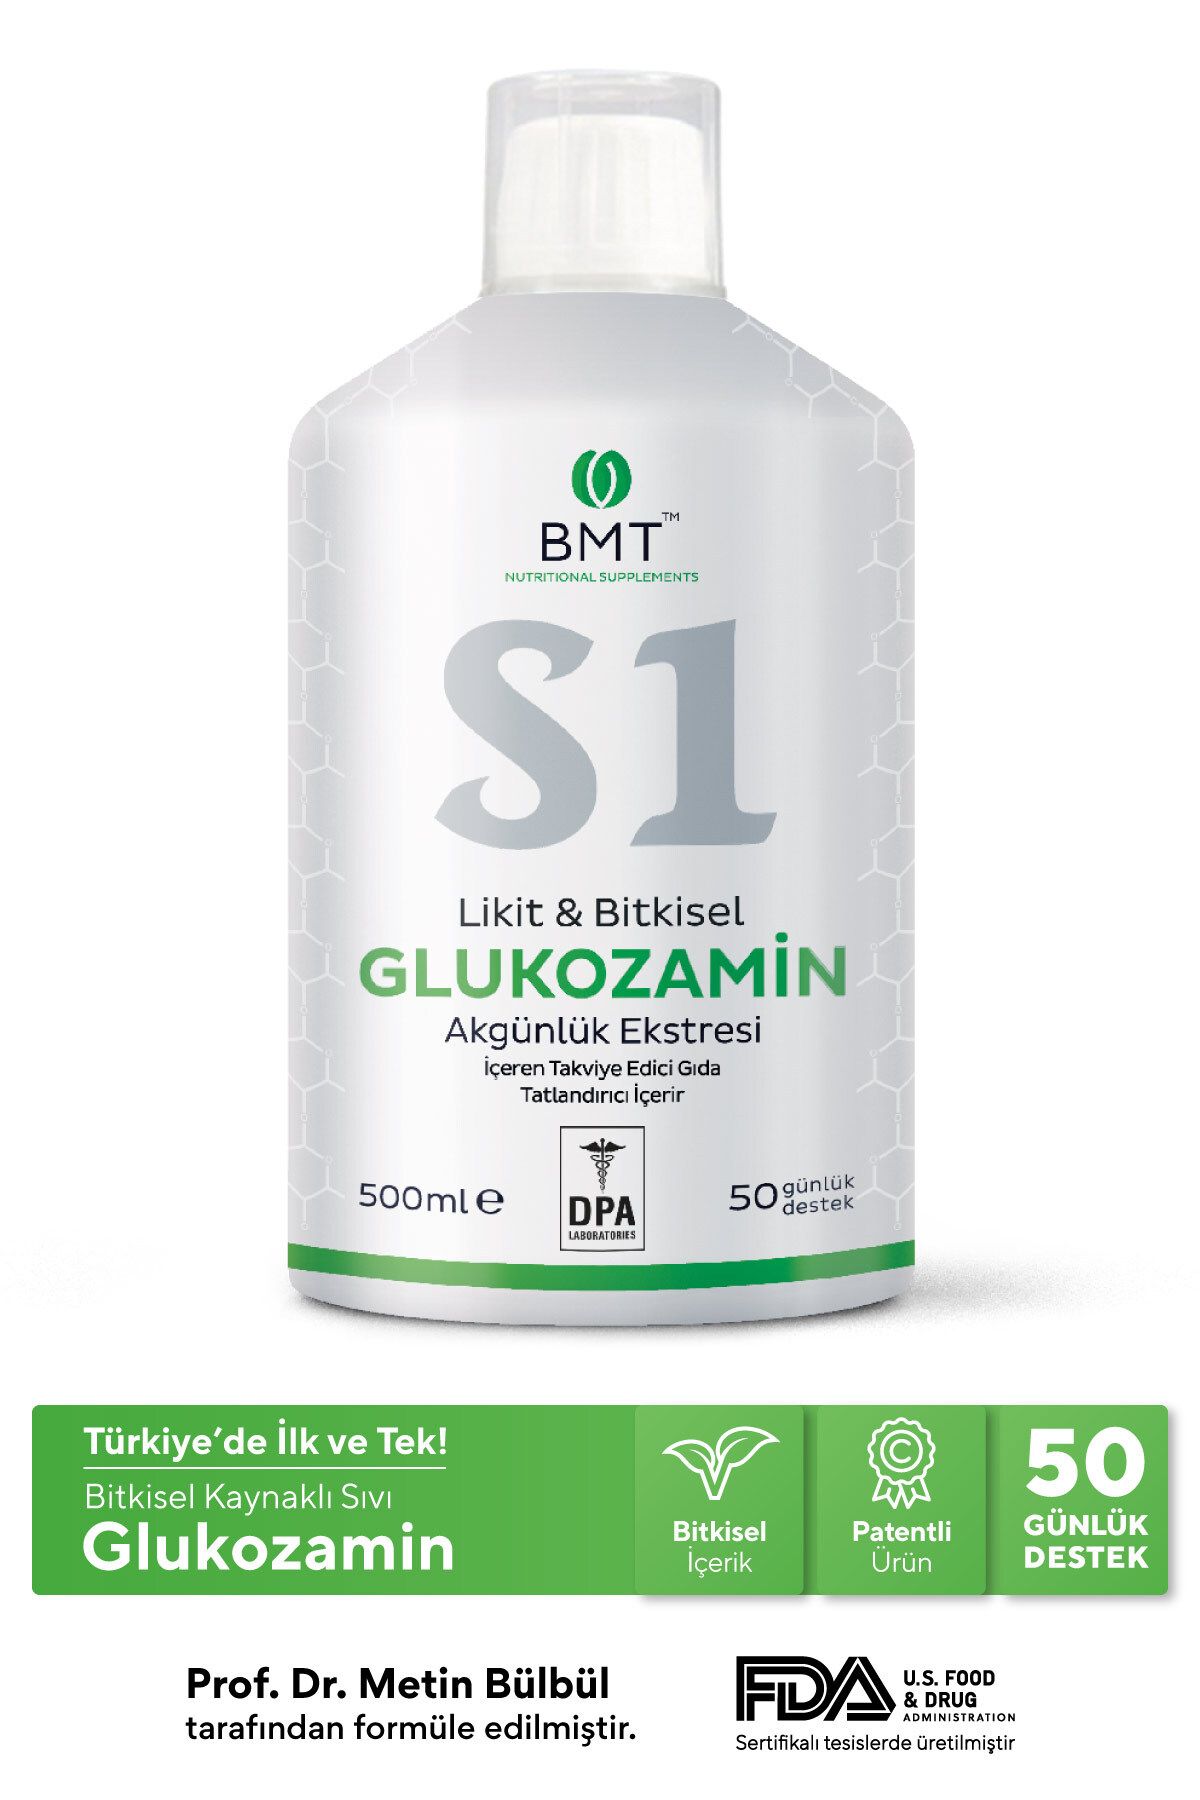 Biomet S1 Glukozamin™, Bitkisel Glukozamin Ve Akgünlük Ekstresi Sıvı Takviye Edici Gıda 50 Gün Vegan 500ml